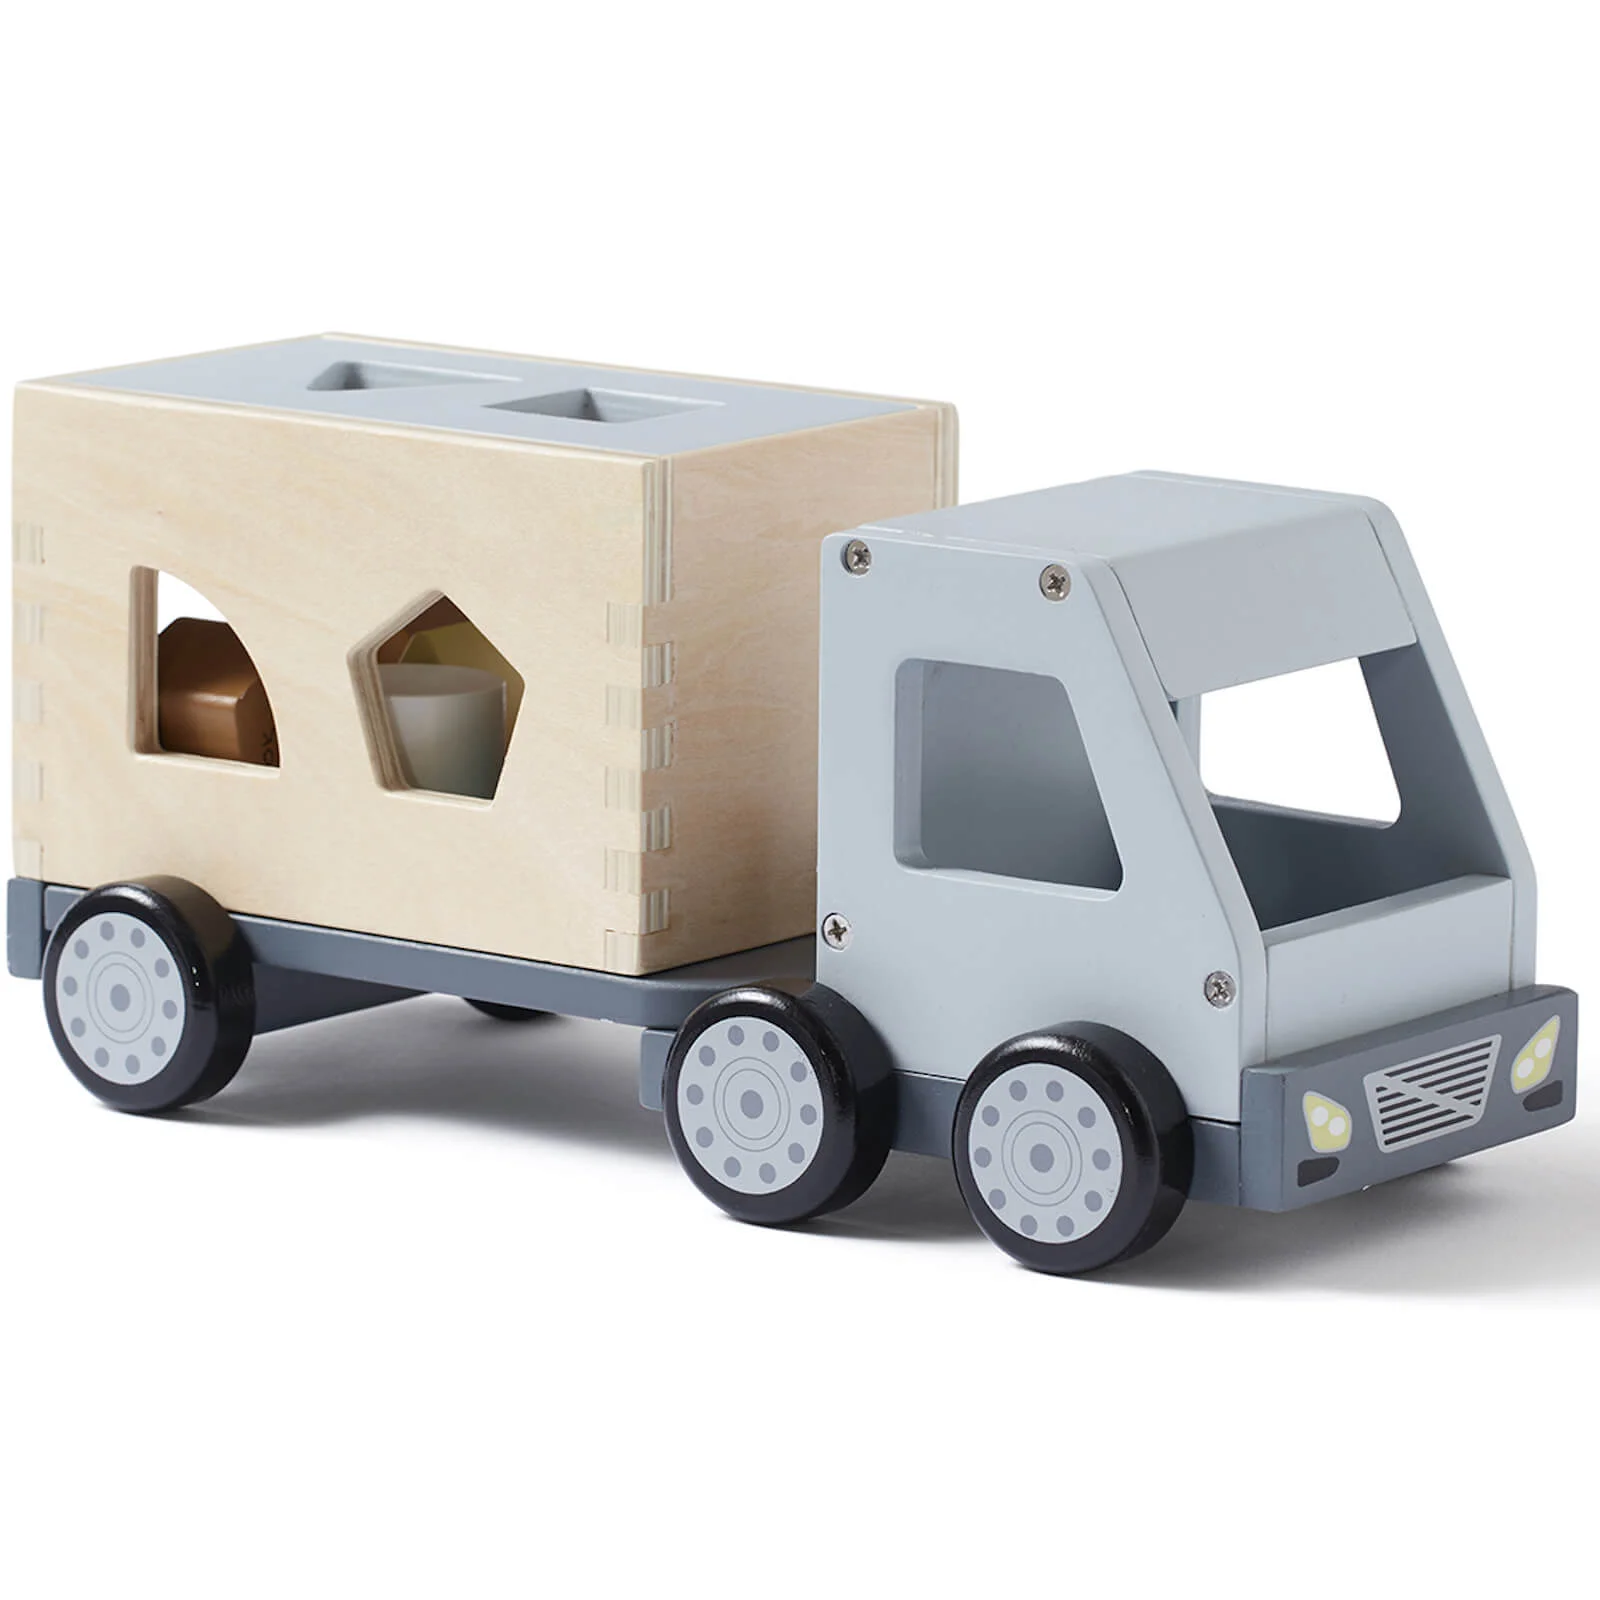 Kids Concept Sorter Truck - Grey Image 1